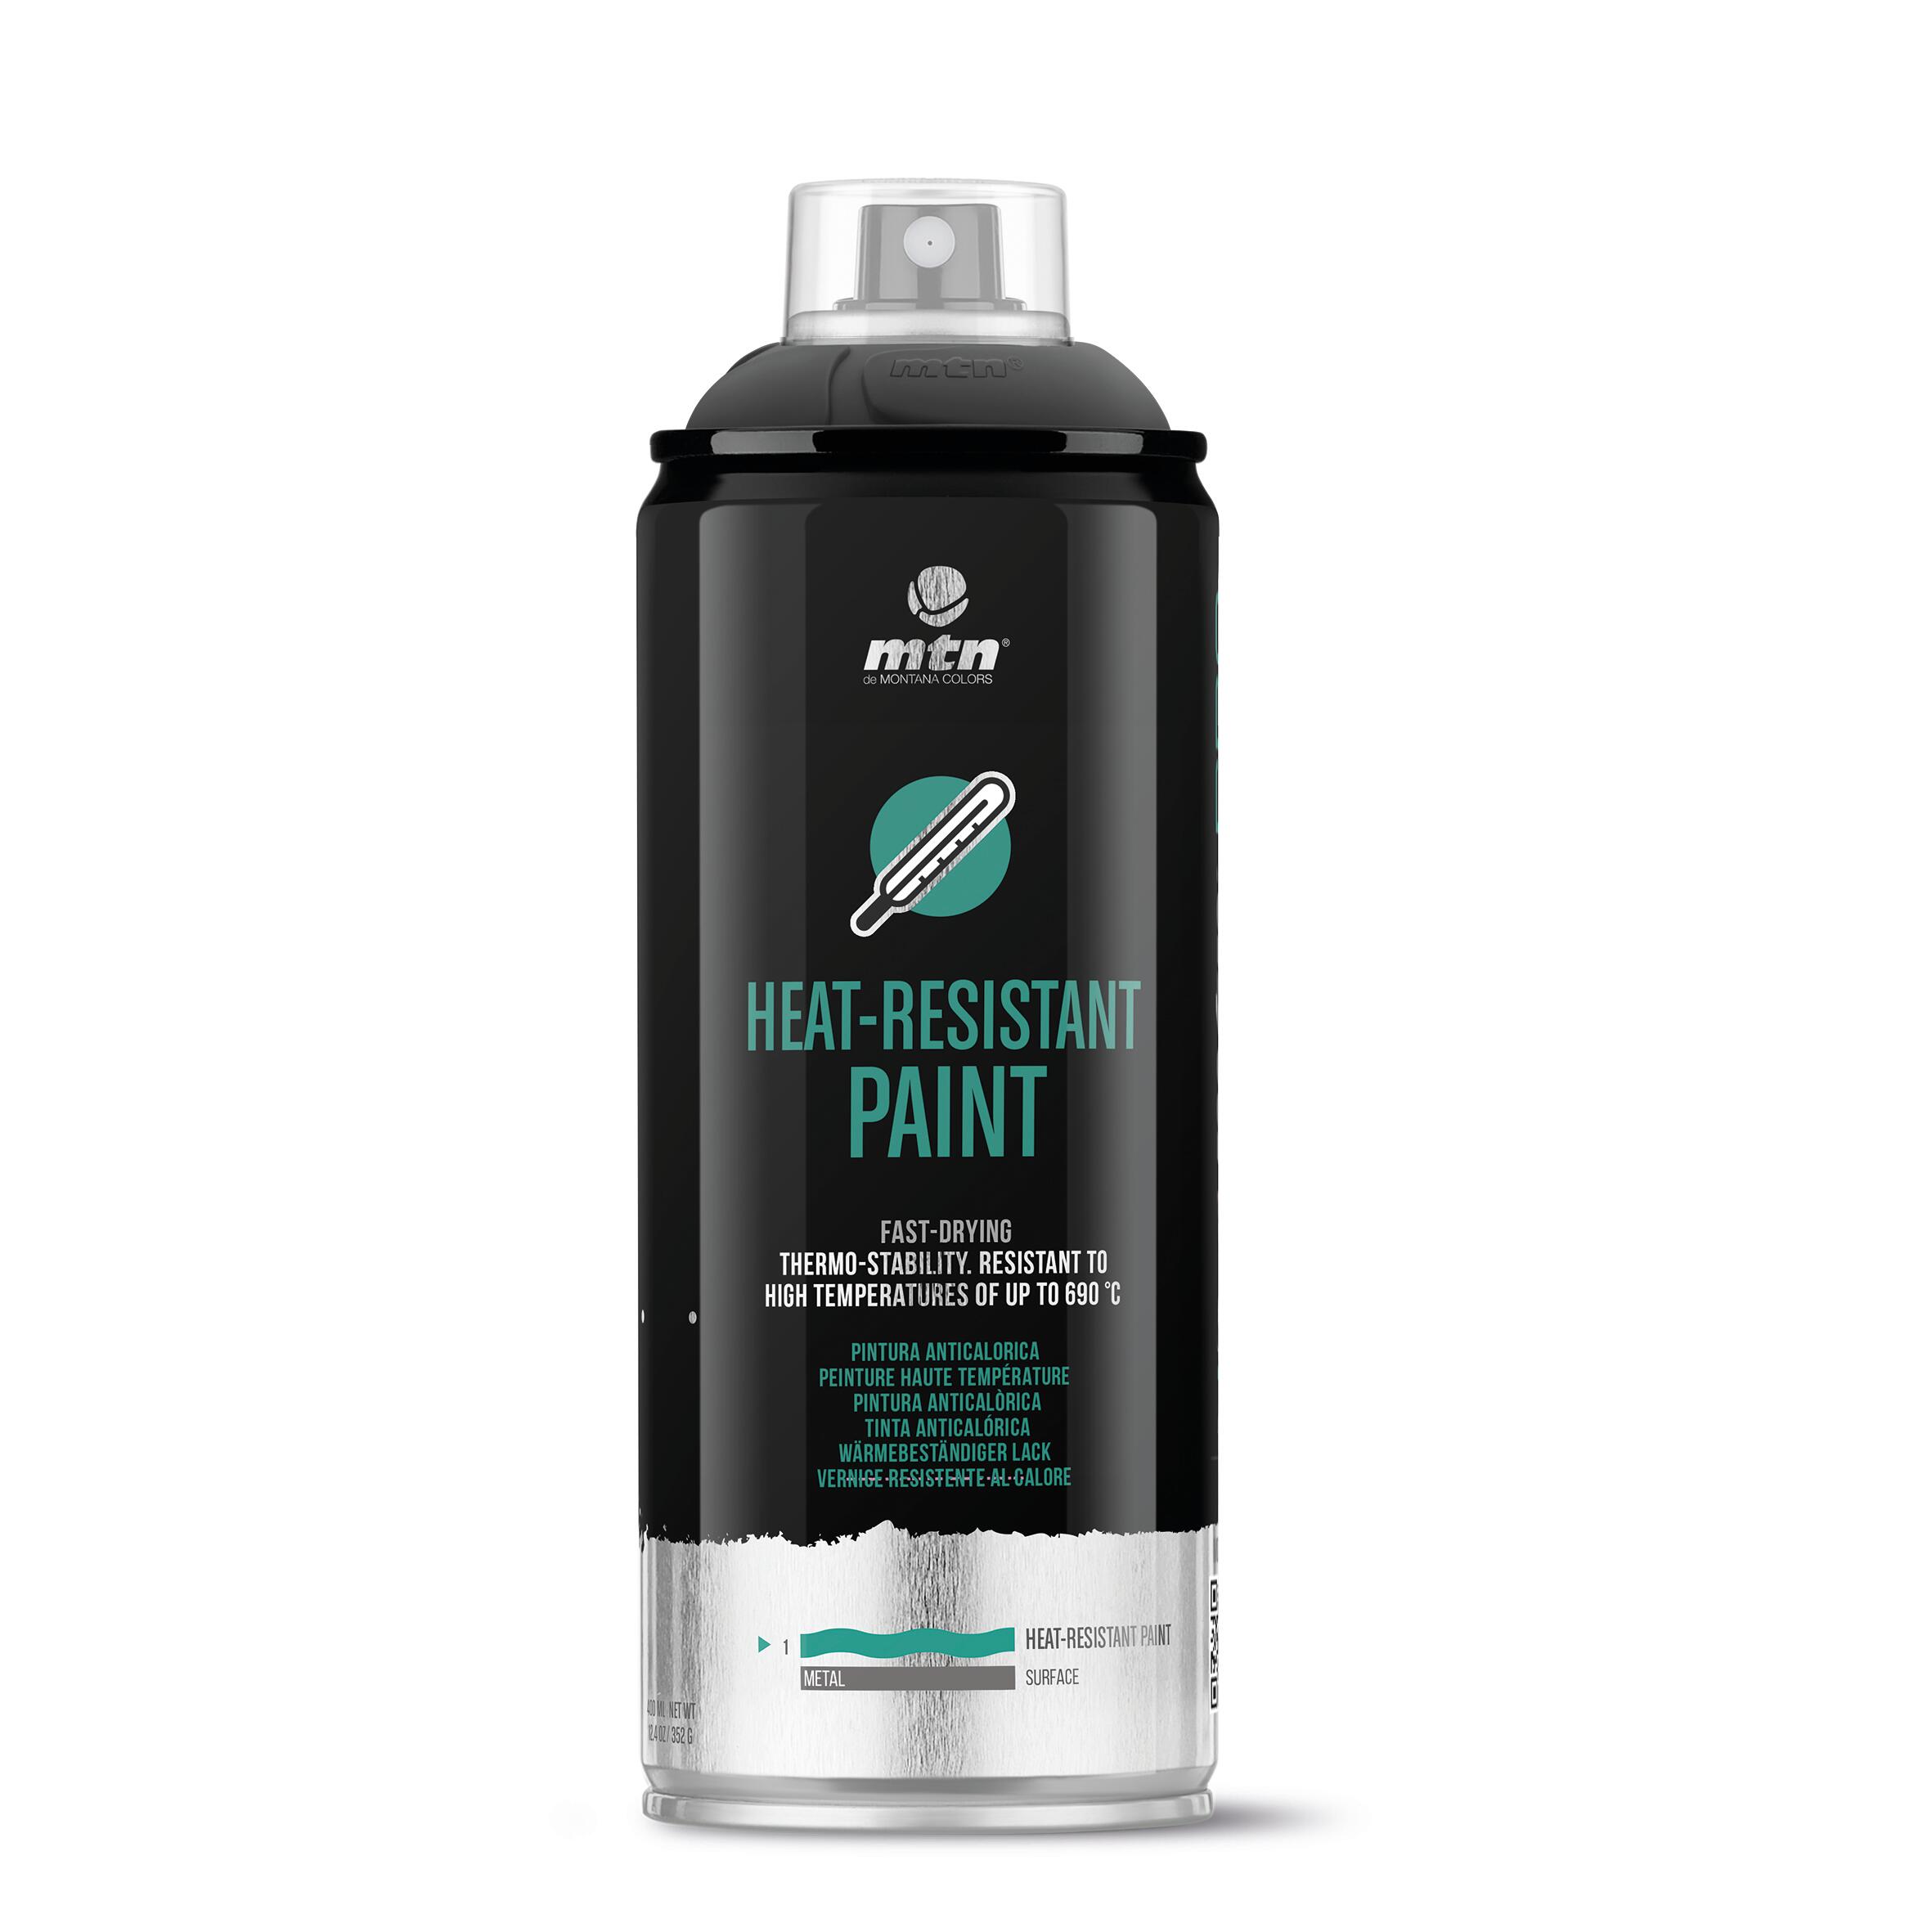 Spray pintura anti calorica negra 200ml***